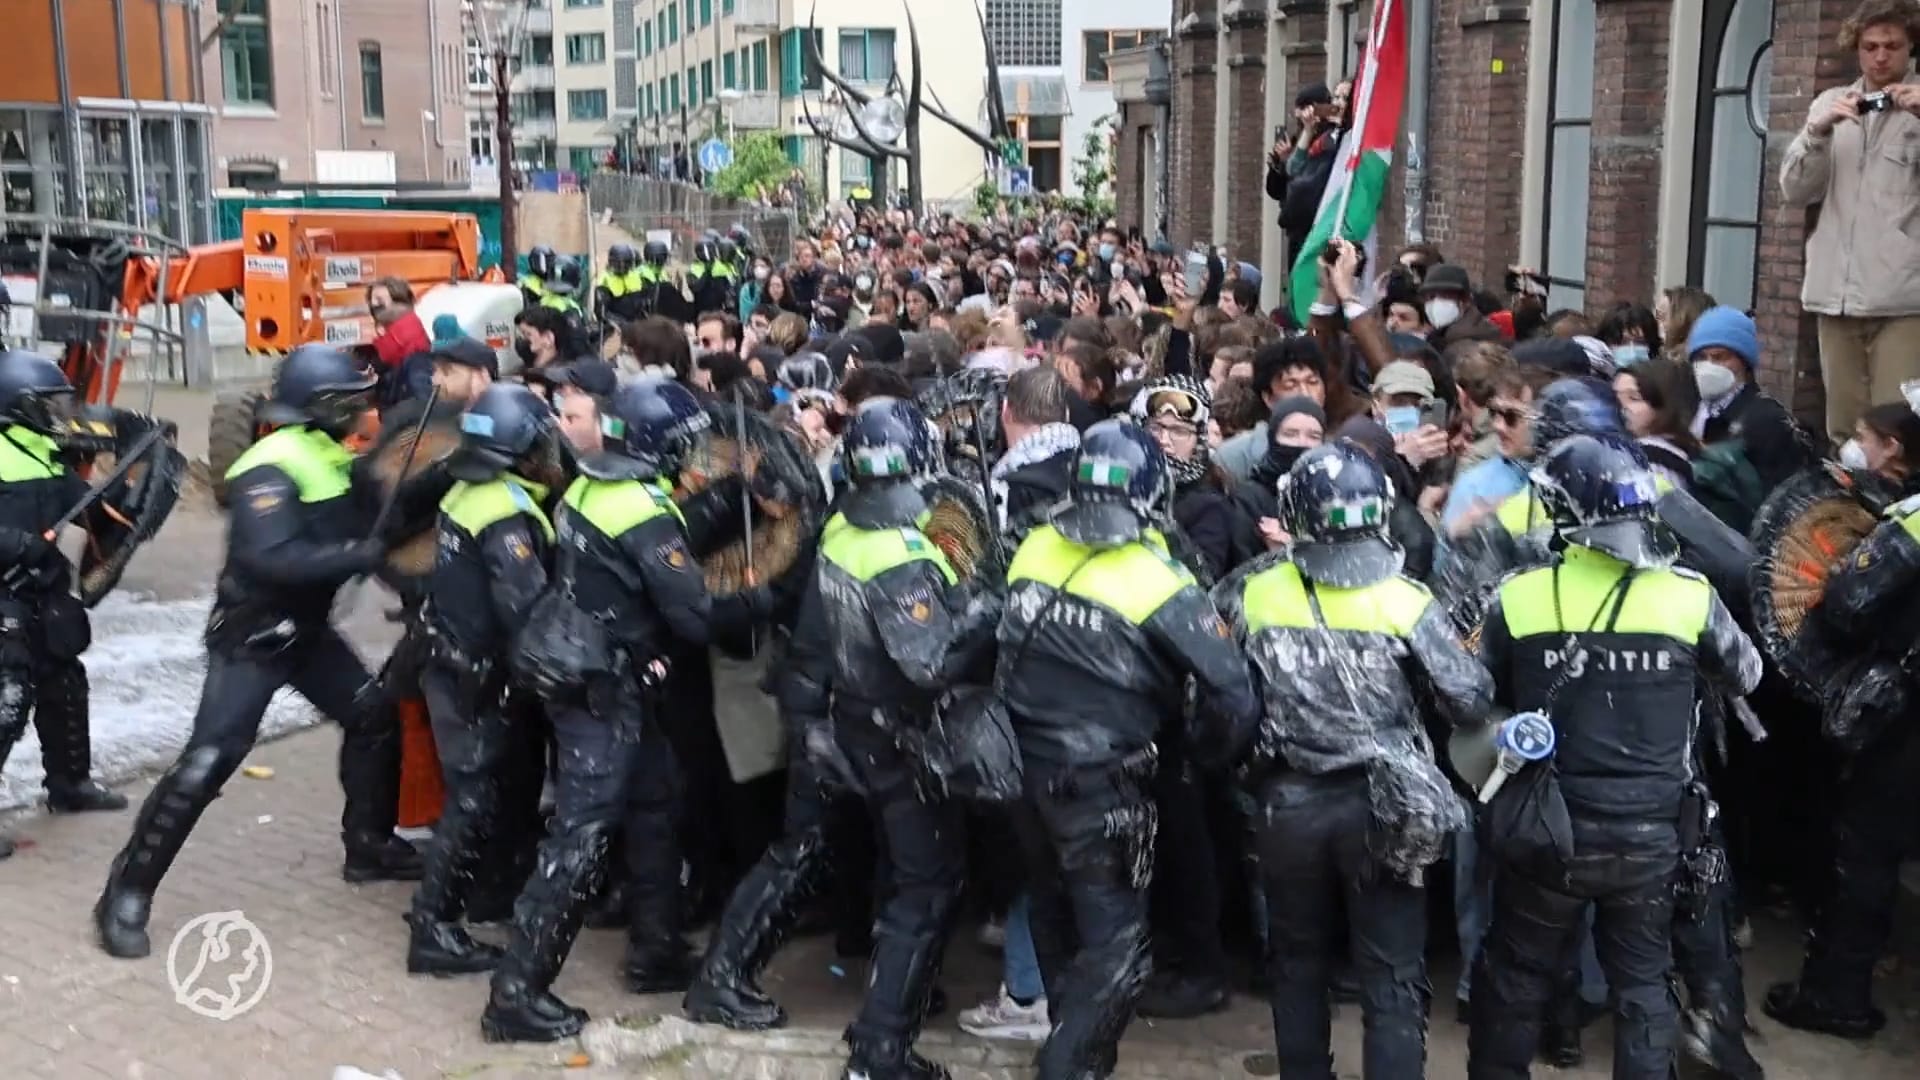 Was optreden van politie bij UvA-protest te ingrijpend? 'Dit is geen demonstratie meer'